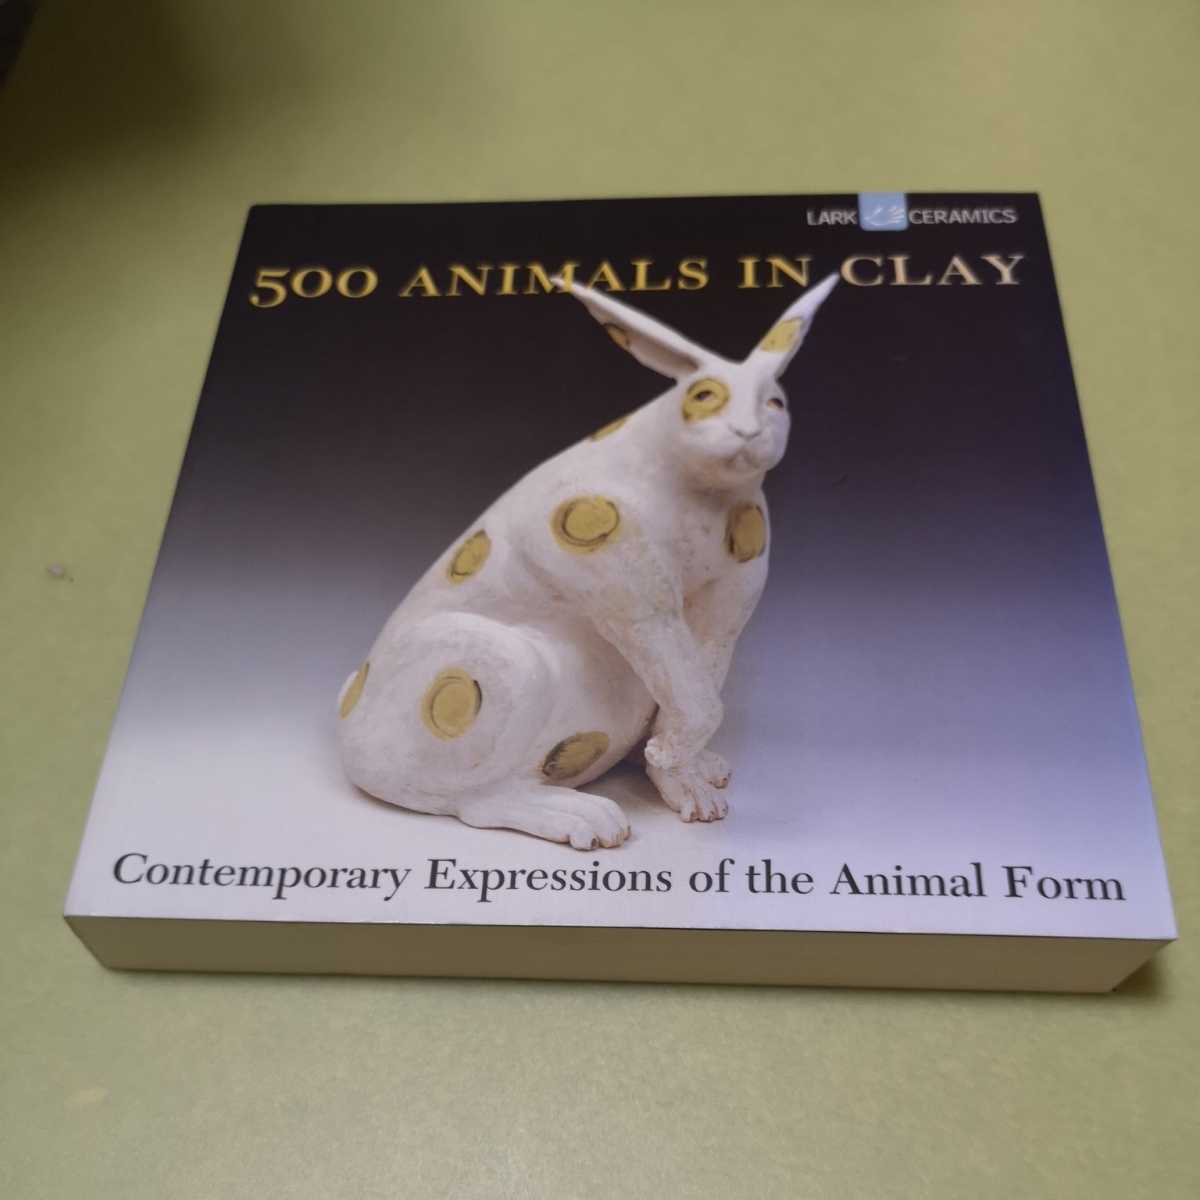 ◎粘土彫刻の英語本　500 Animals in Clay: Contemporary Expressions of the Animal Form (A Lark Ceramics Book)